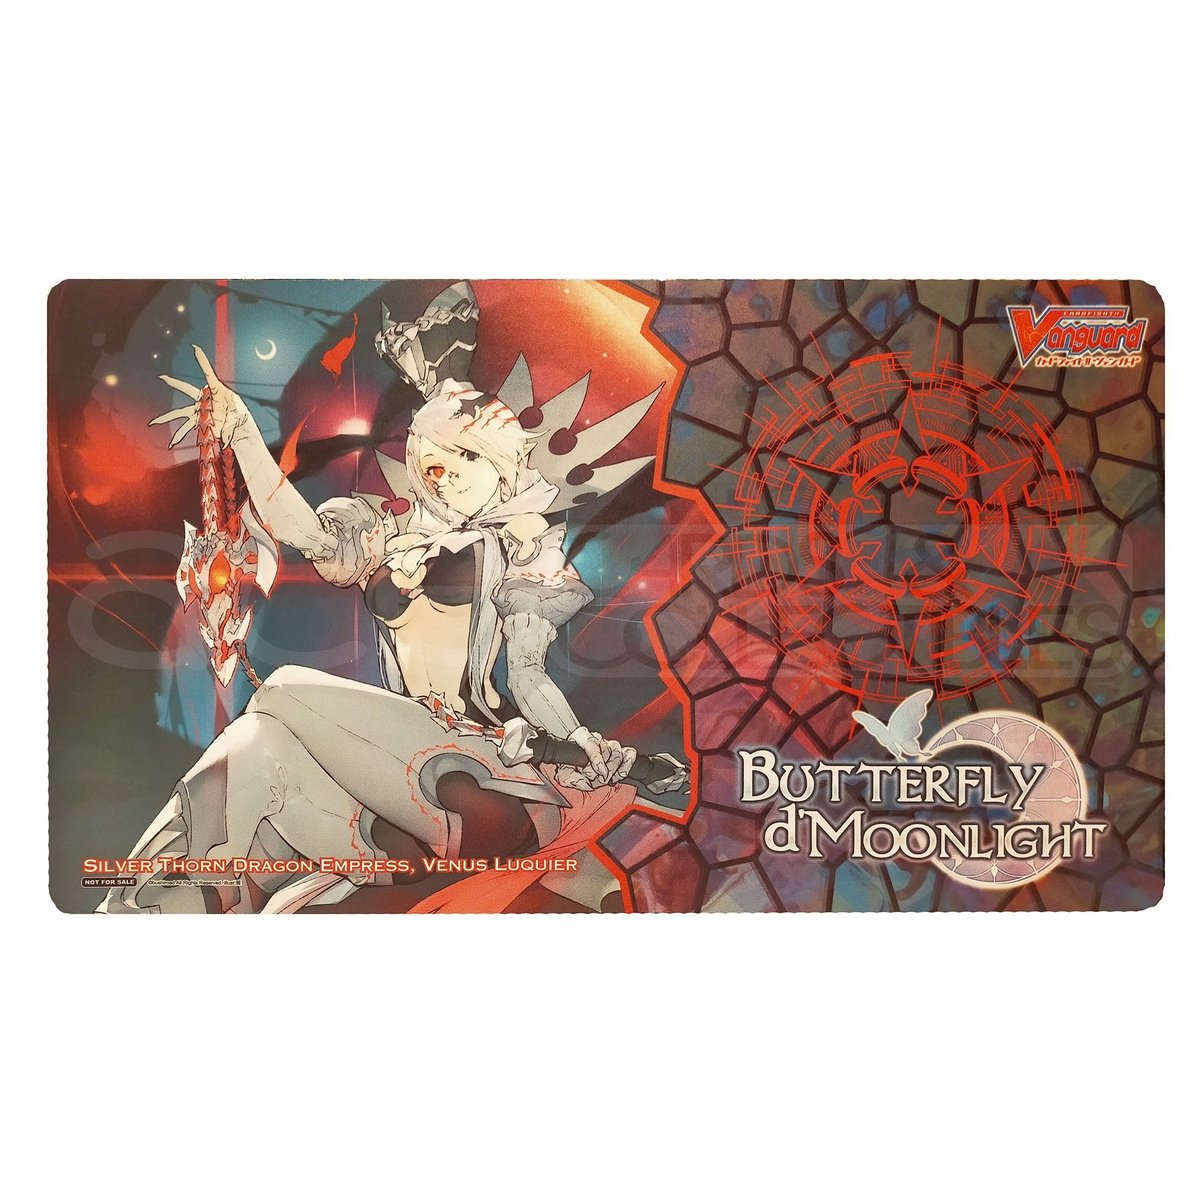 Cardfight Vanguard Playmat Butterfly d'Moonlight Sneak Preview "Venus Luquier" (VG-V-BT09)-Ace Cards & Collectibles-Ace Cards & Collectibles